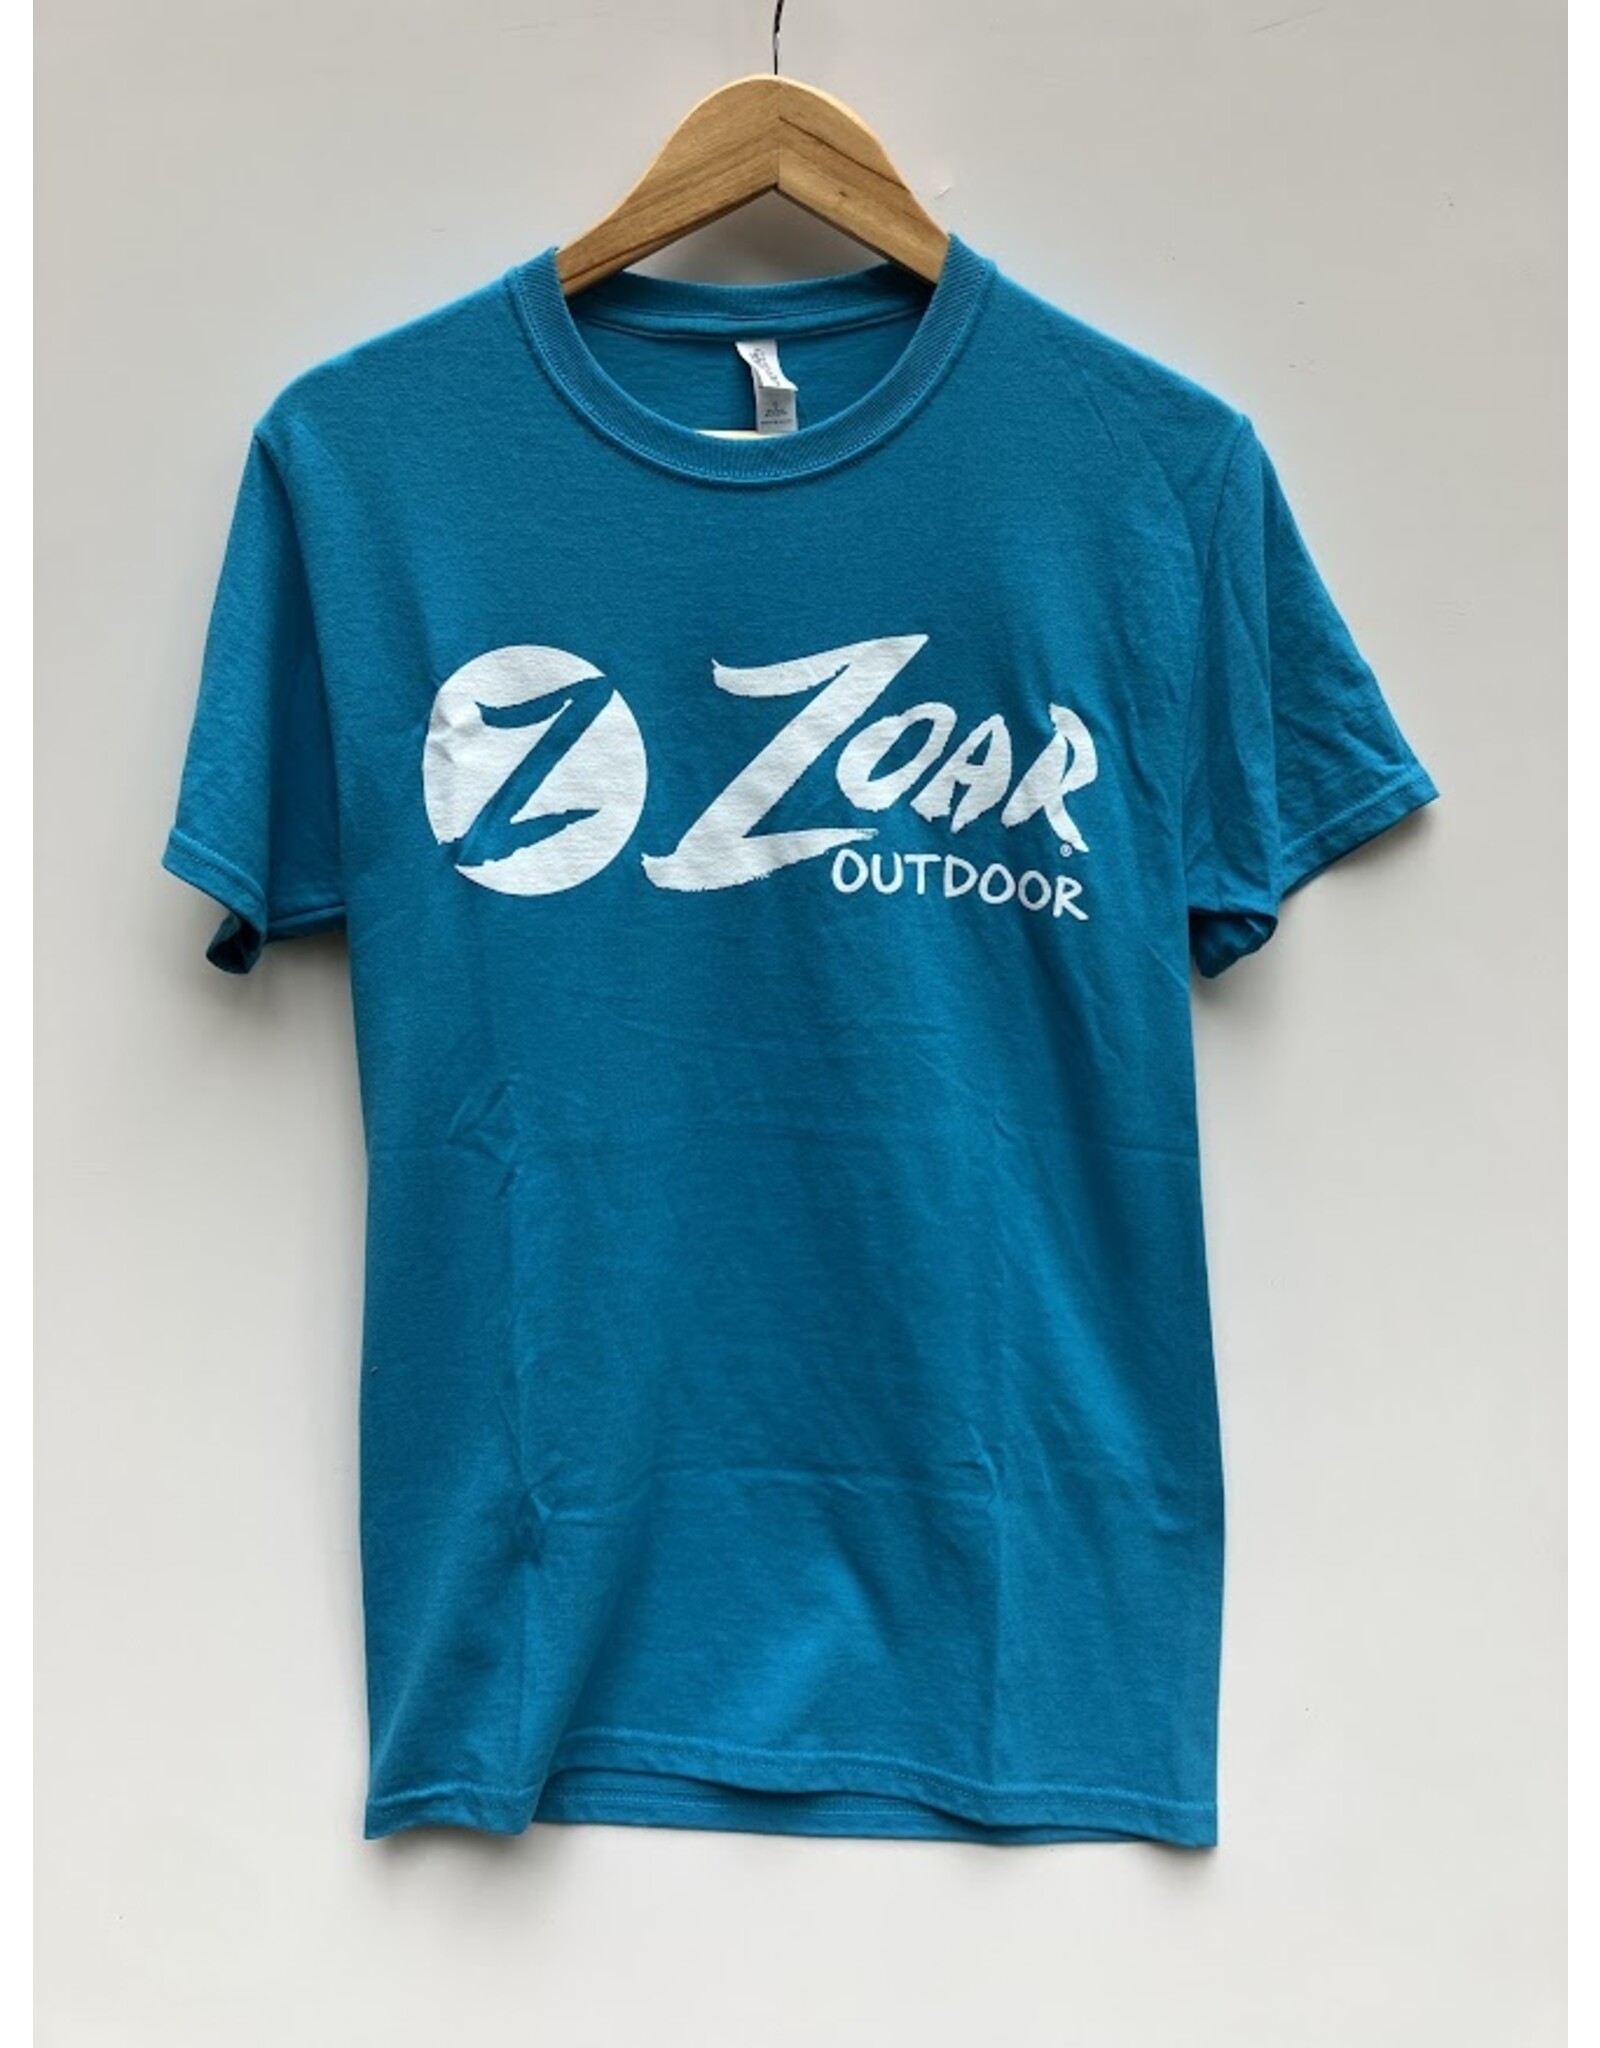 Zoar Logo T-Shirt